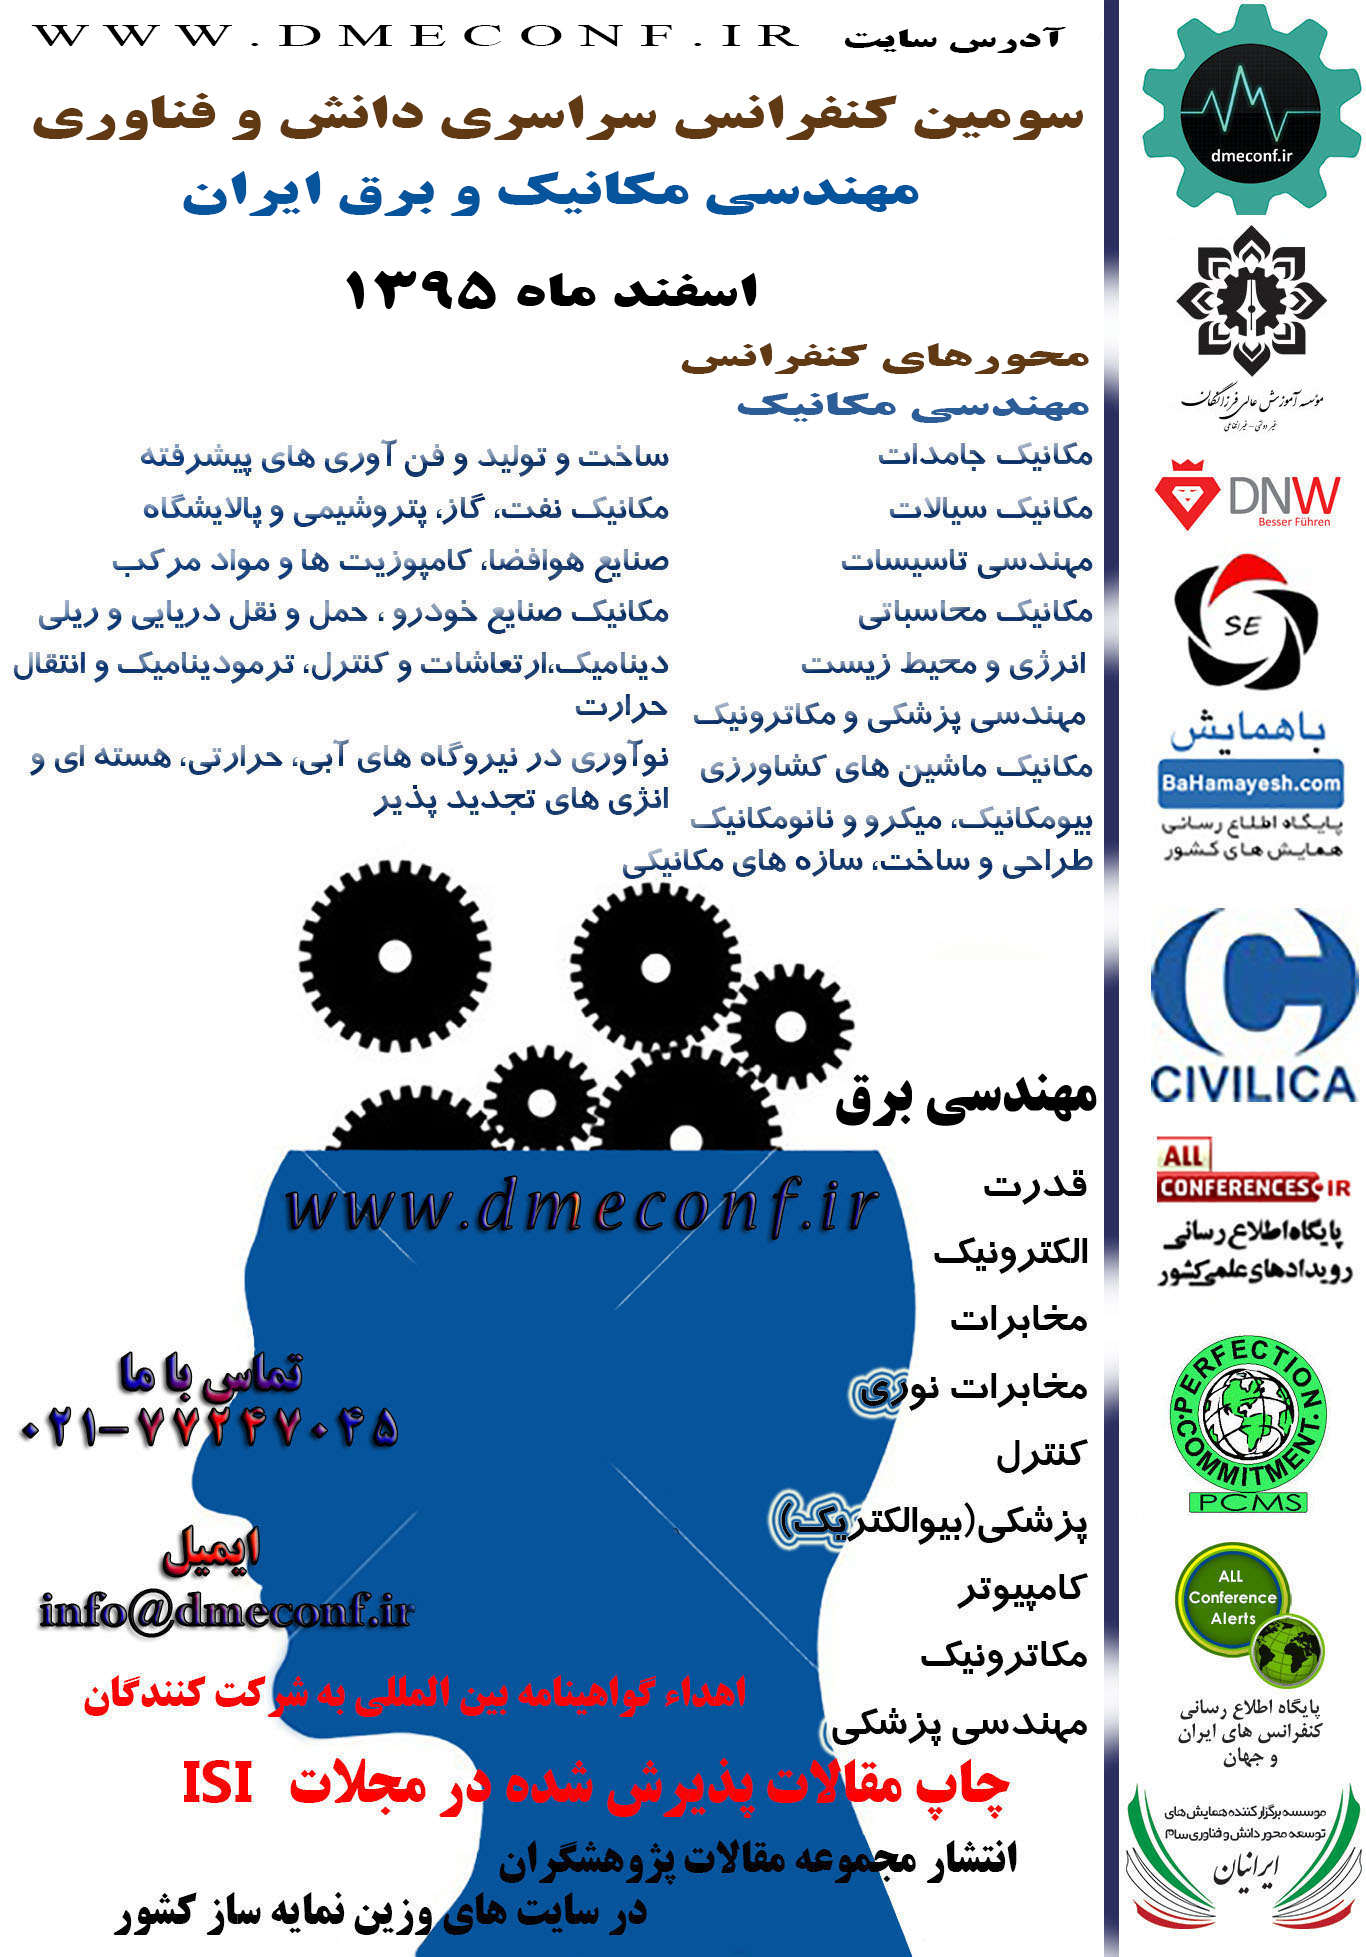 سومین کنفرانس سراسری دانش و فناوری مهندسی مکانیک و برق ایران